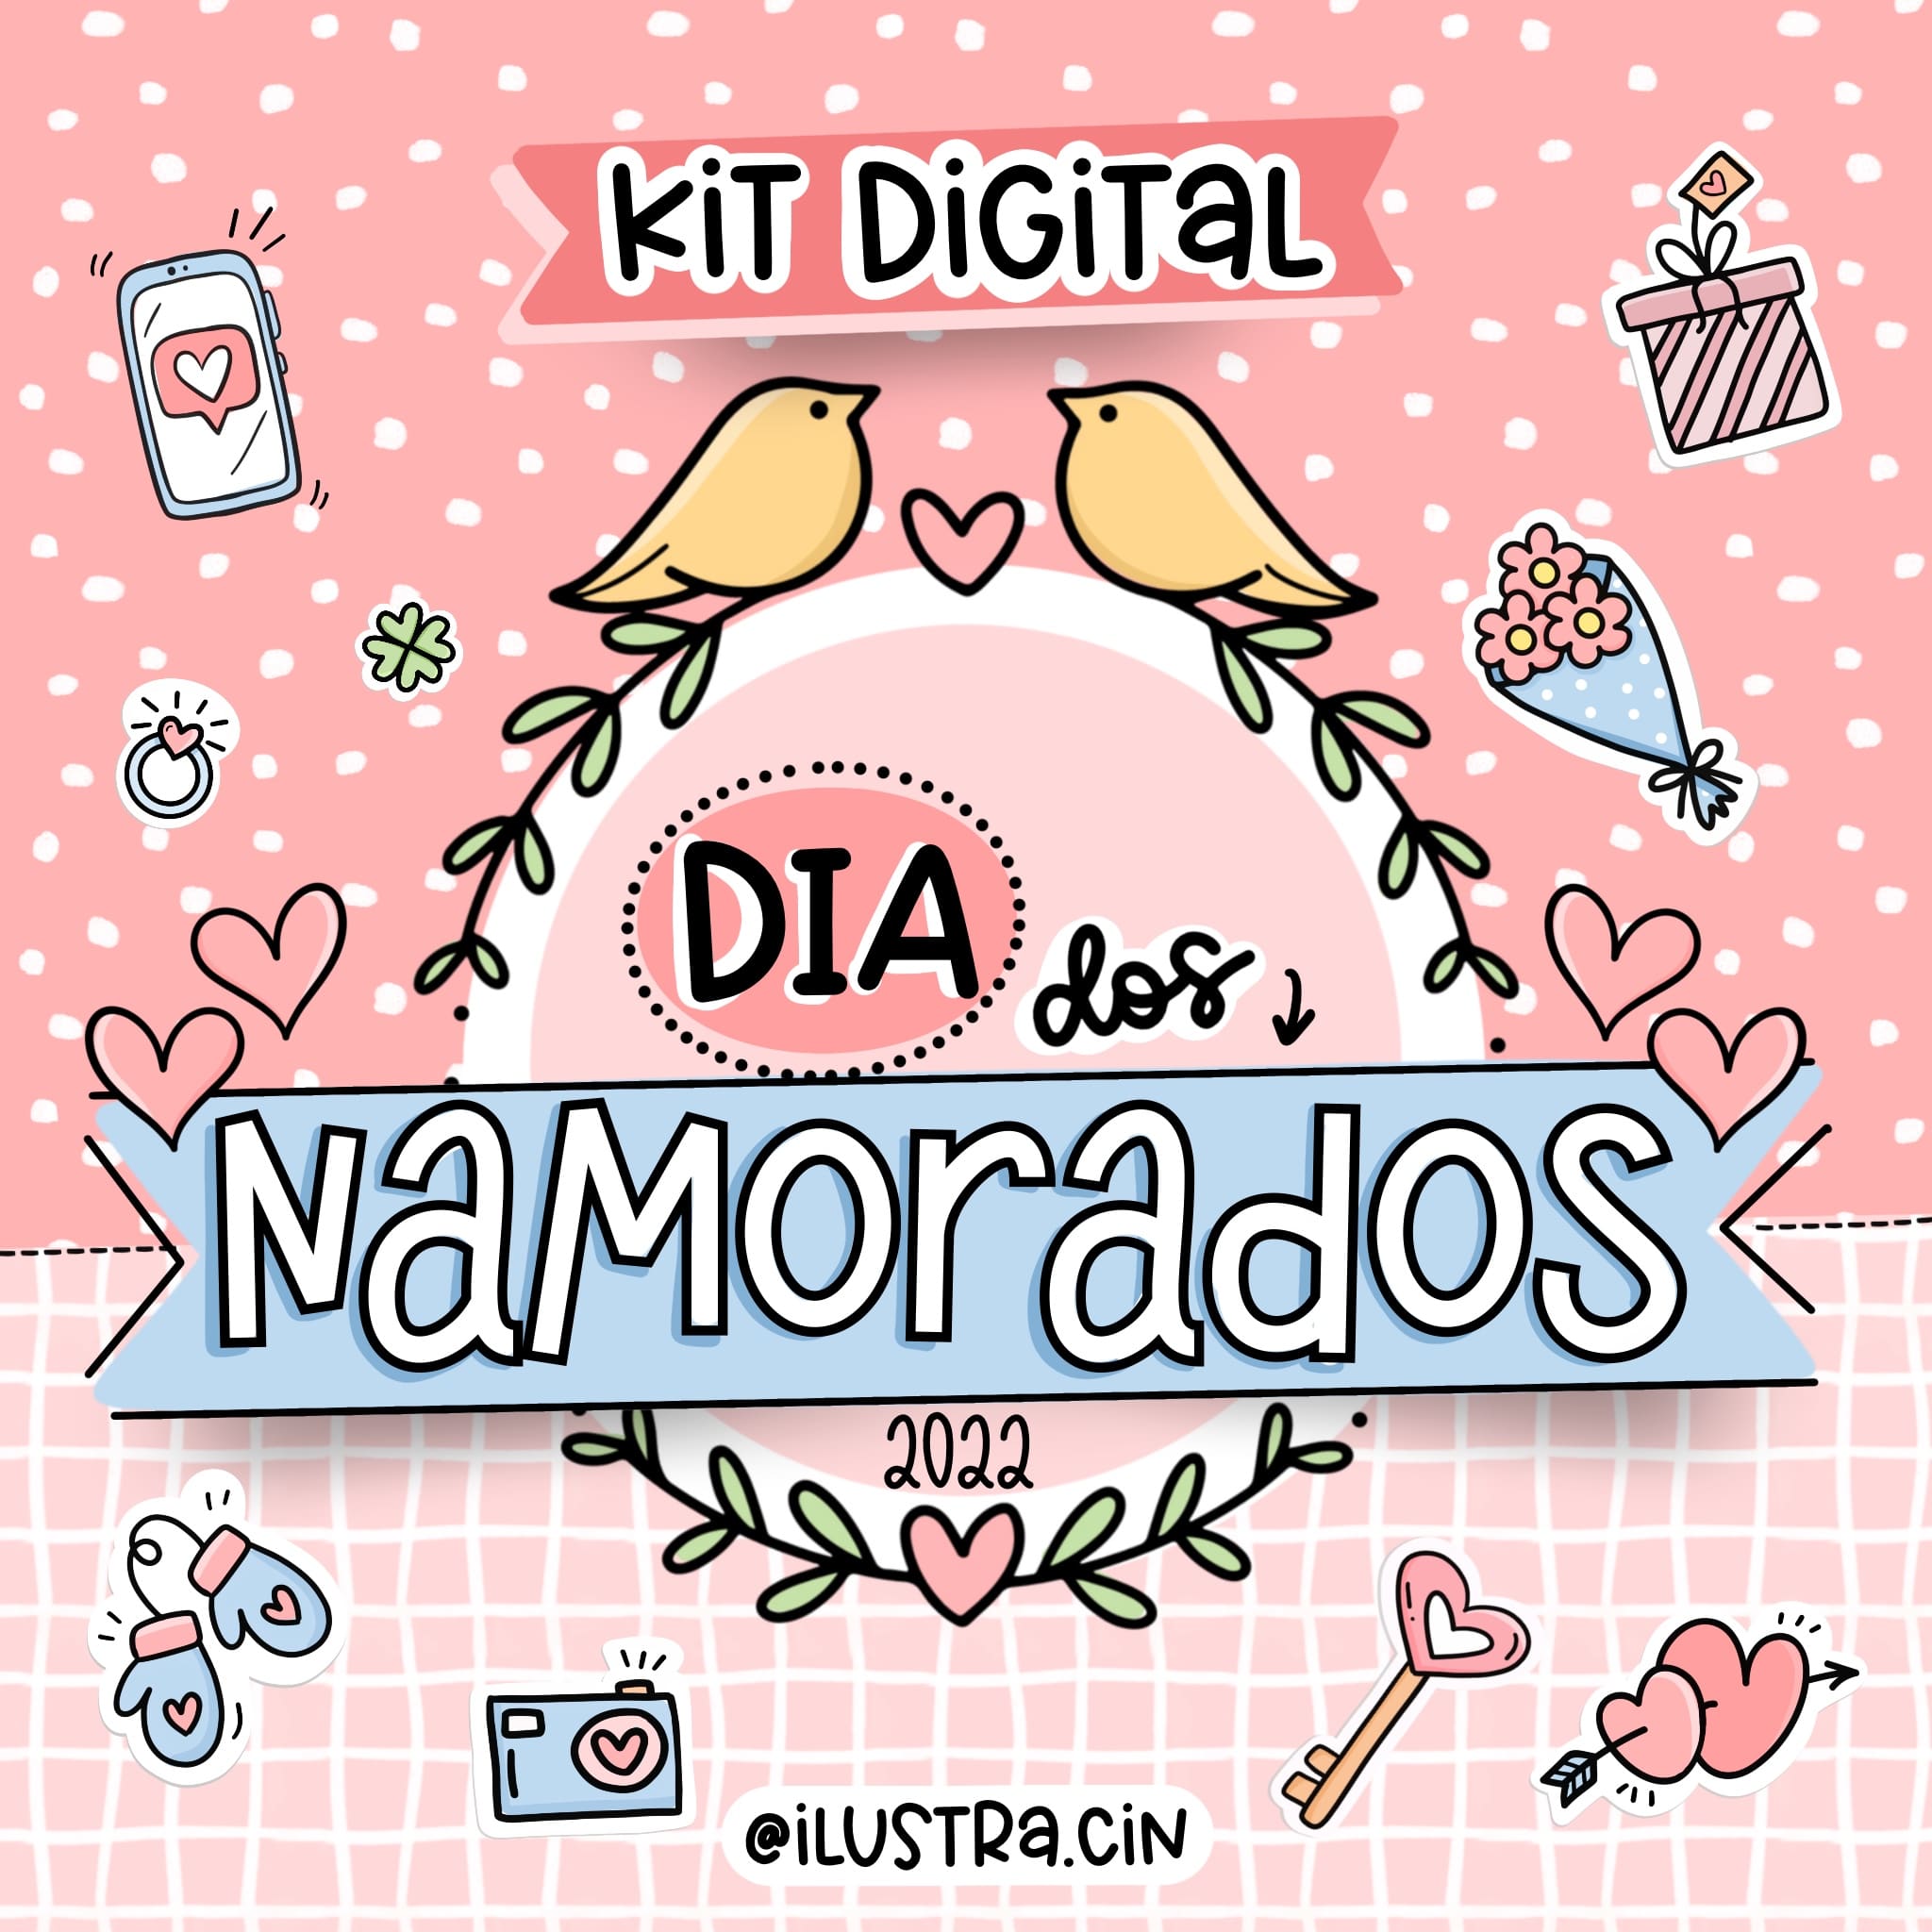 Kit Digital Dia dos namorados em Png